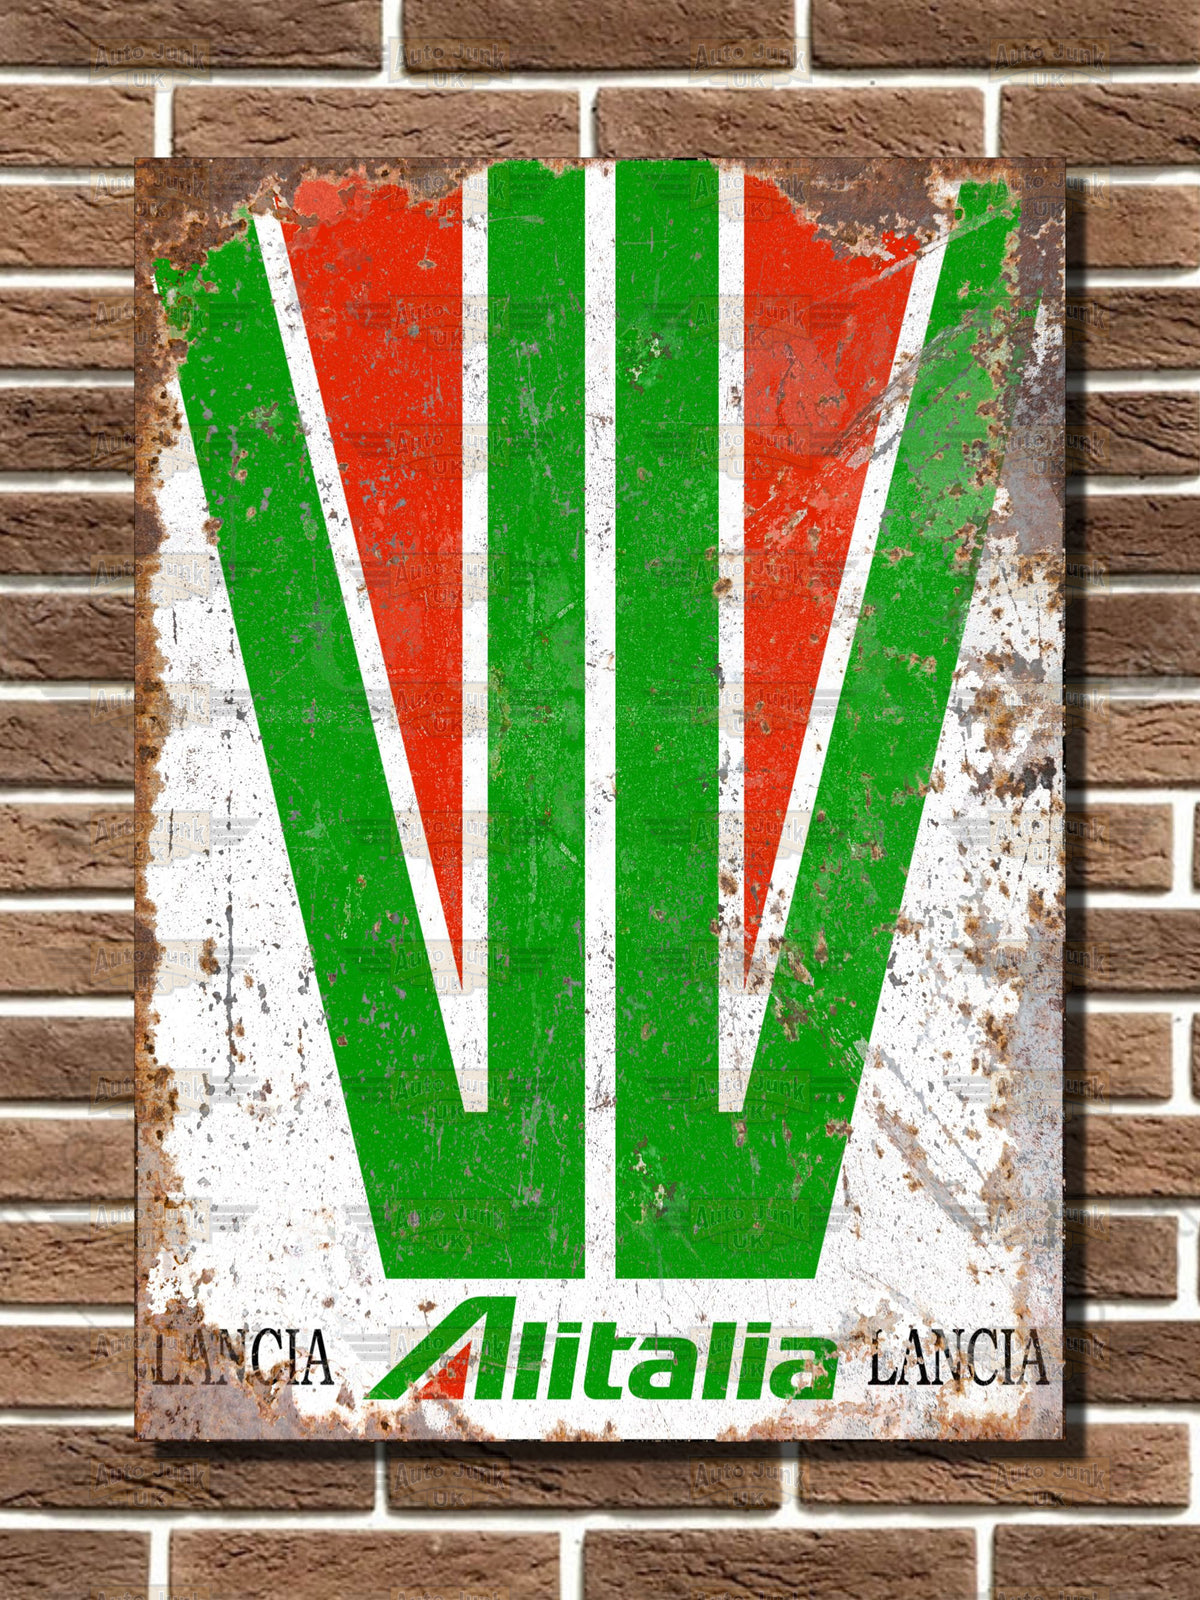 Lancia Stratos Alitalia Rally Livery Metal Sign